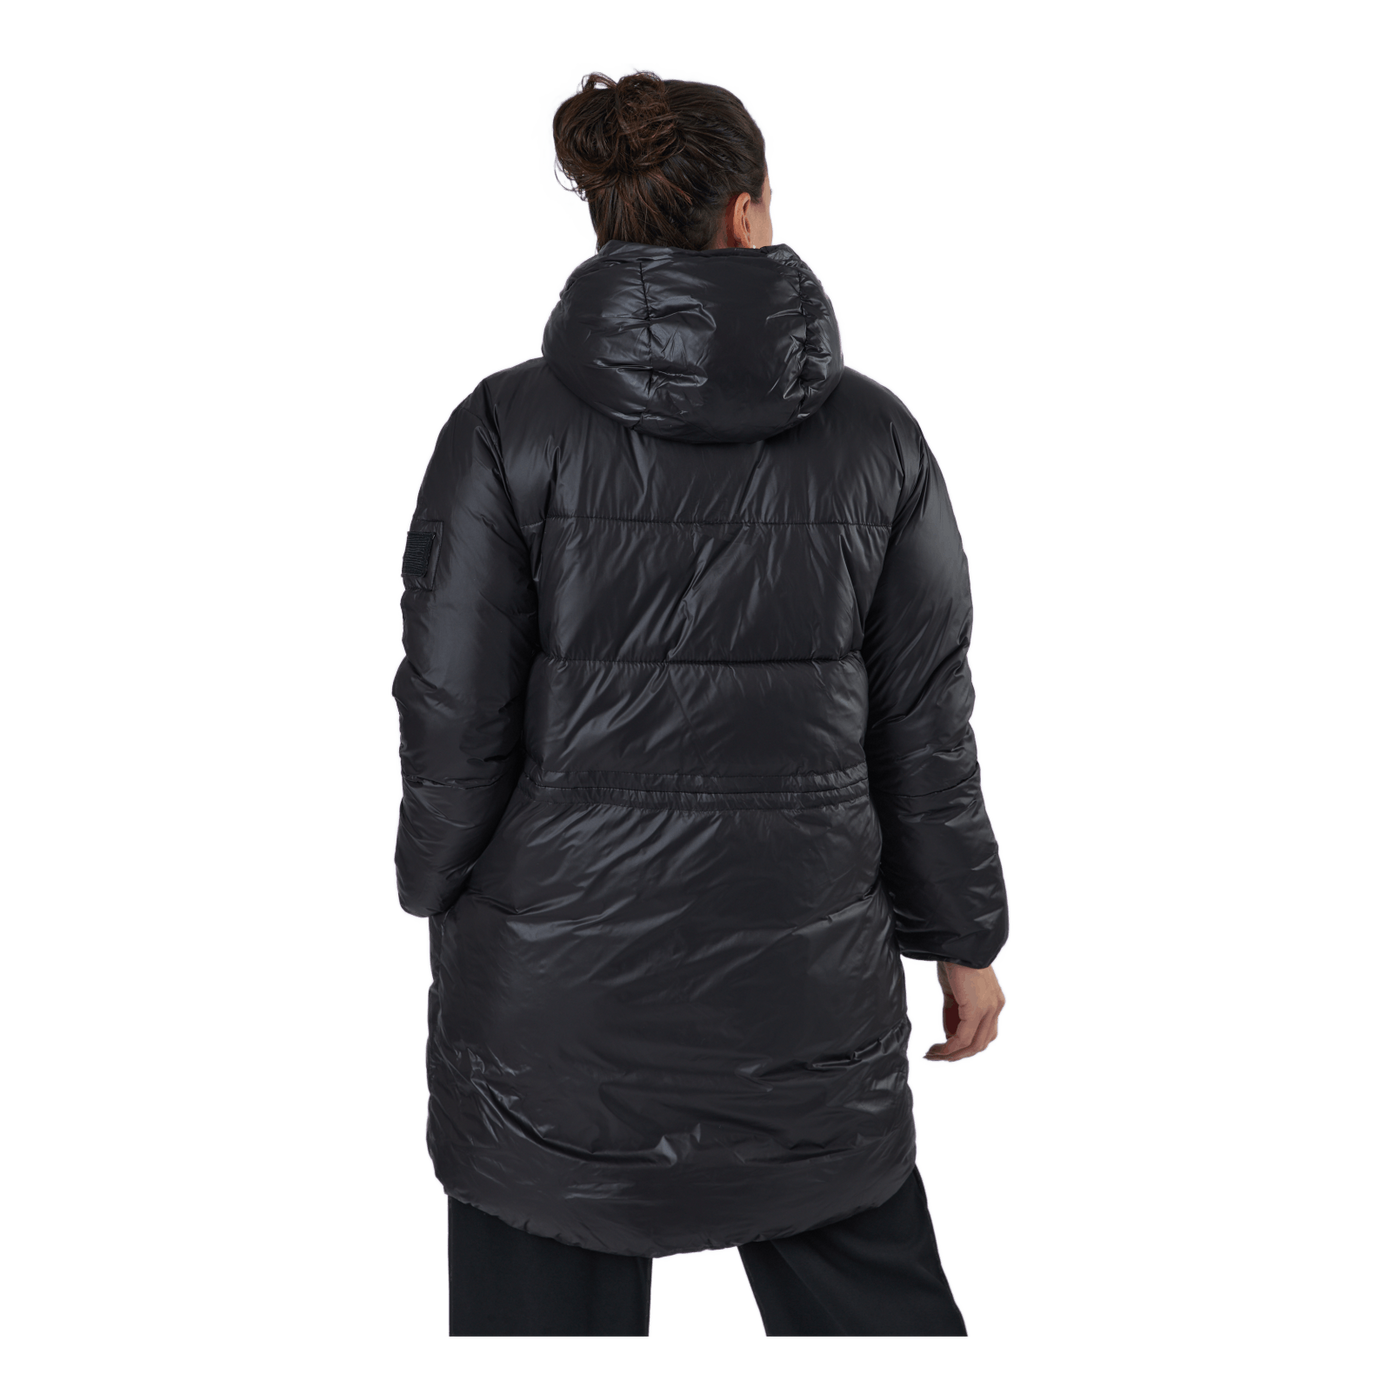 W. Mid Length Shiny Jacket Black